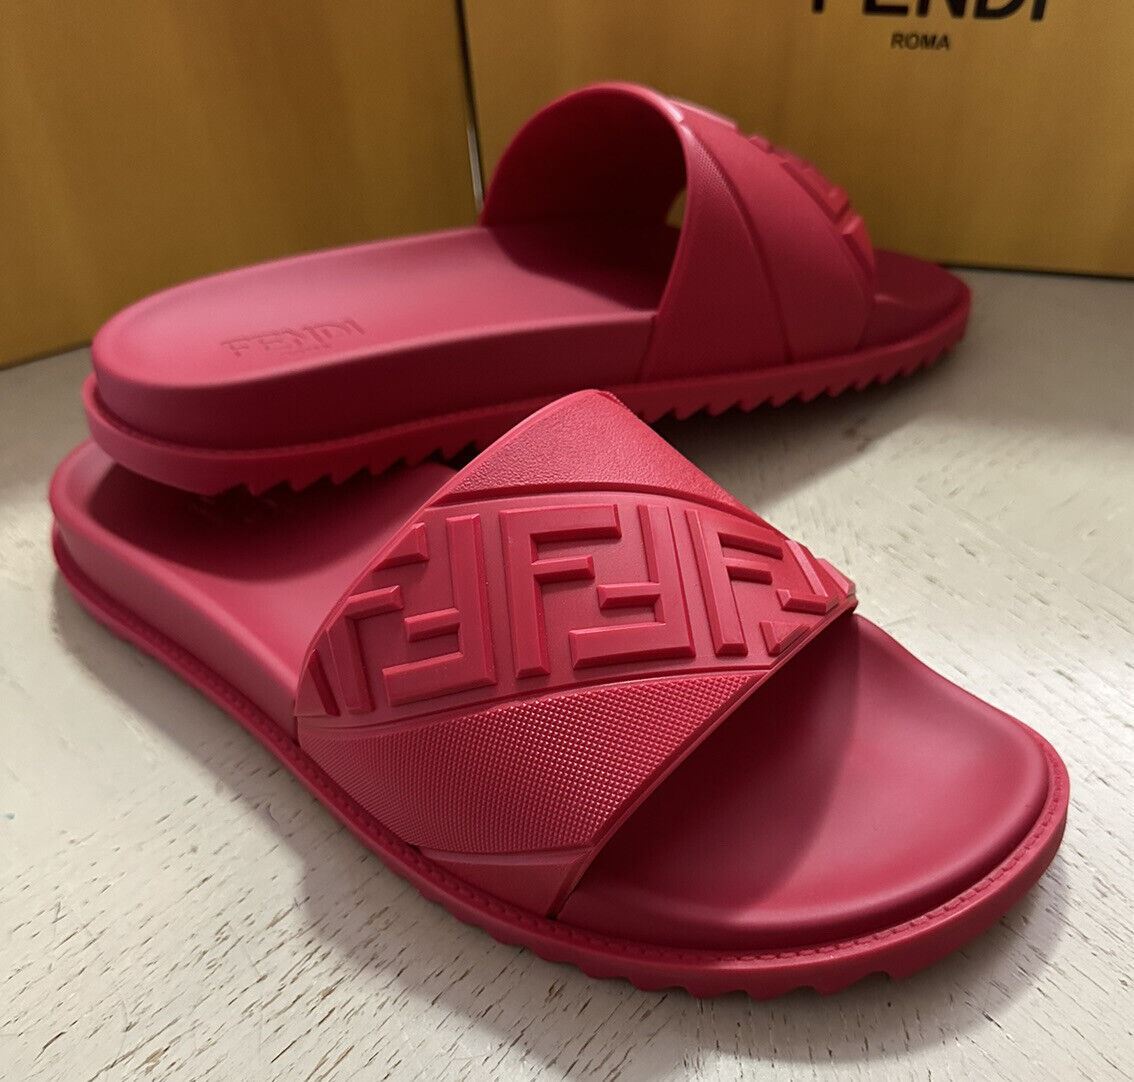 NIB $430 Шлепанцы Fendi Diagonal Logo для бассейна Красные сандалии 14 US/47 EU